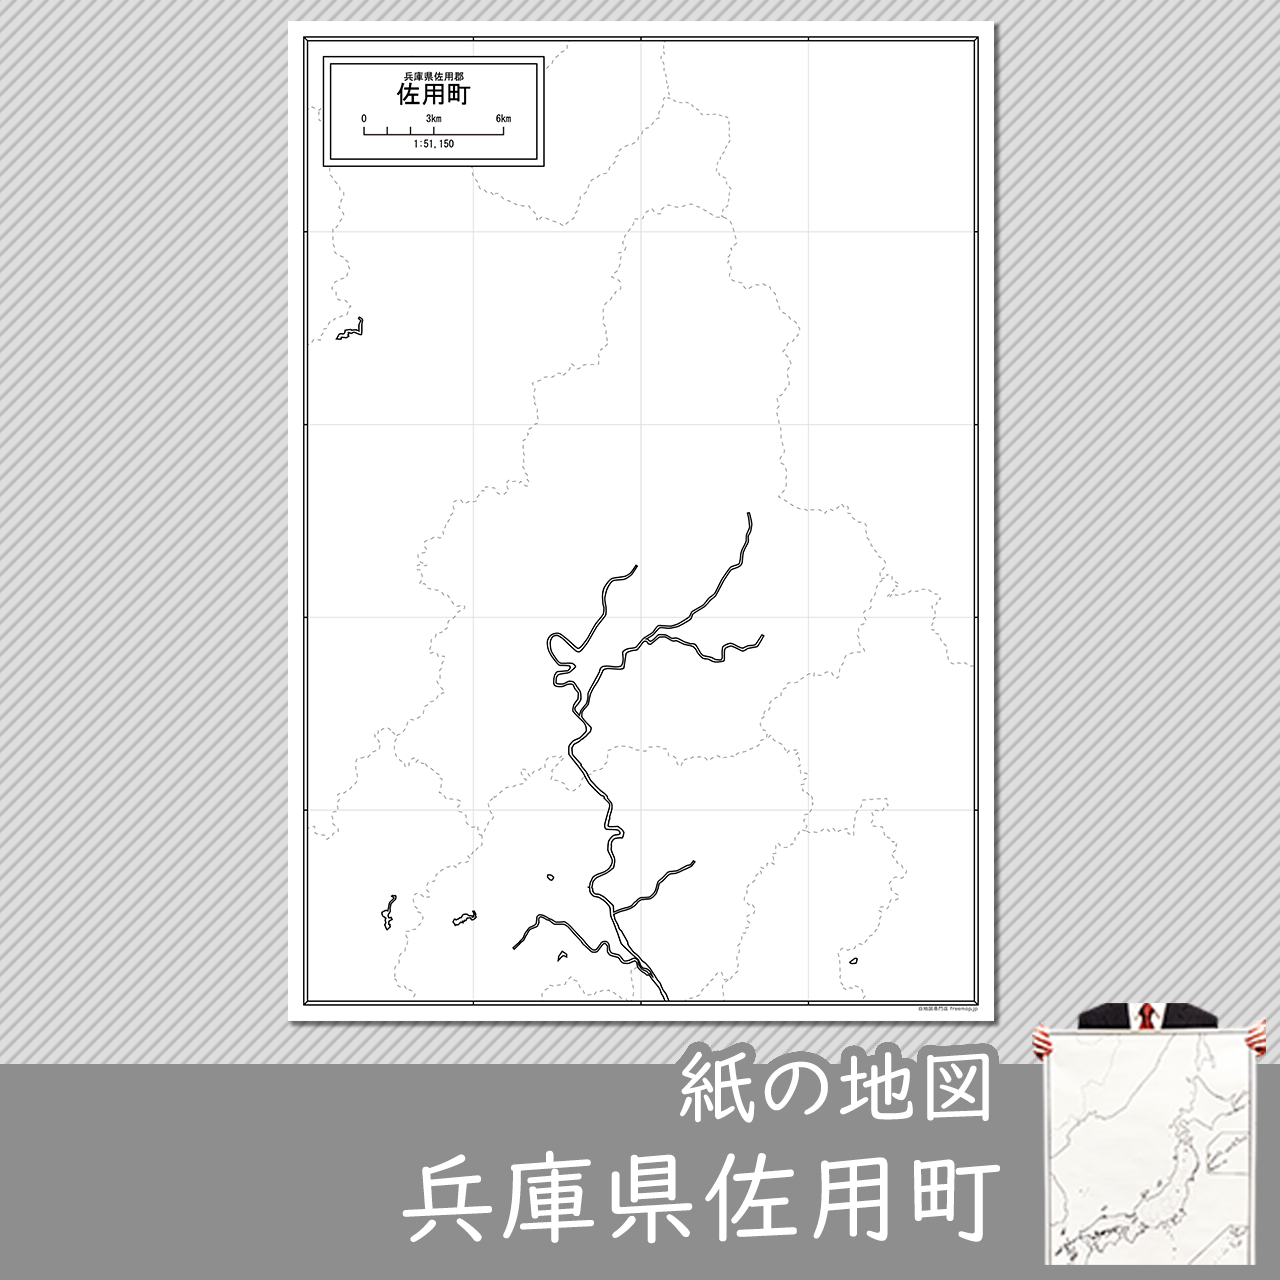 佐用町の紙の白地図